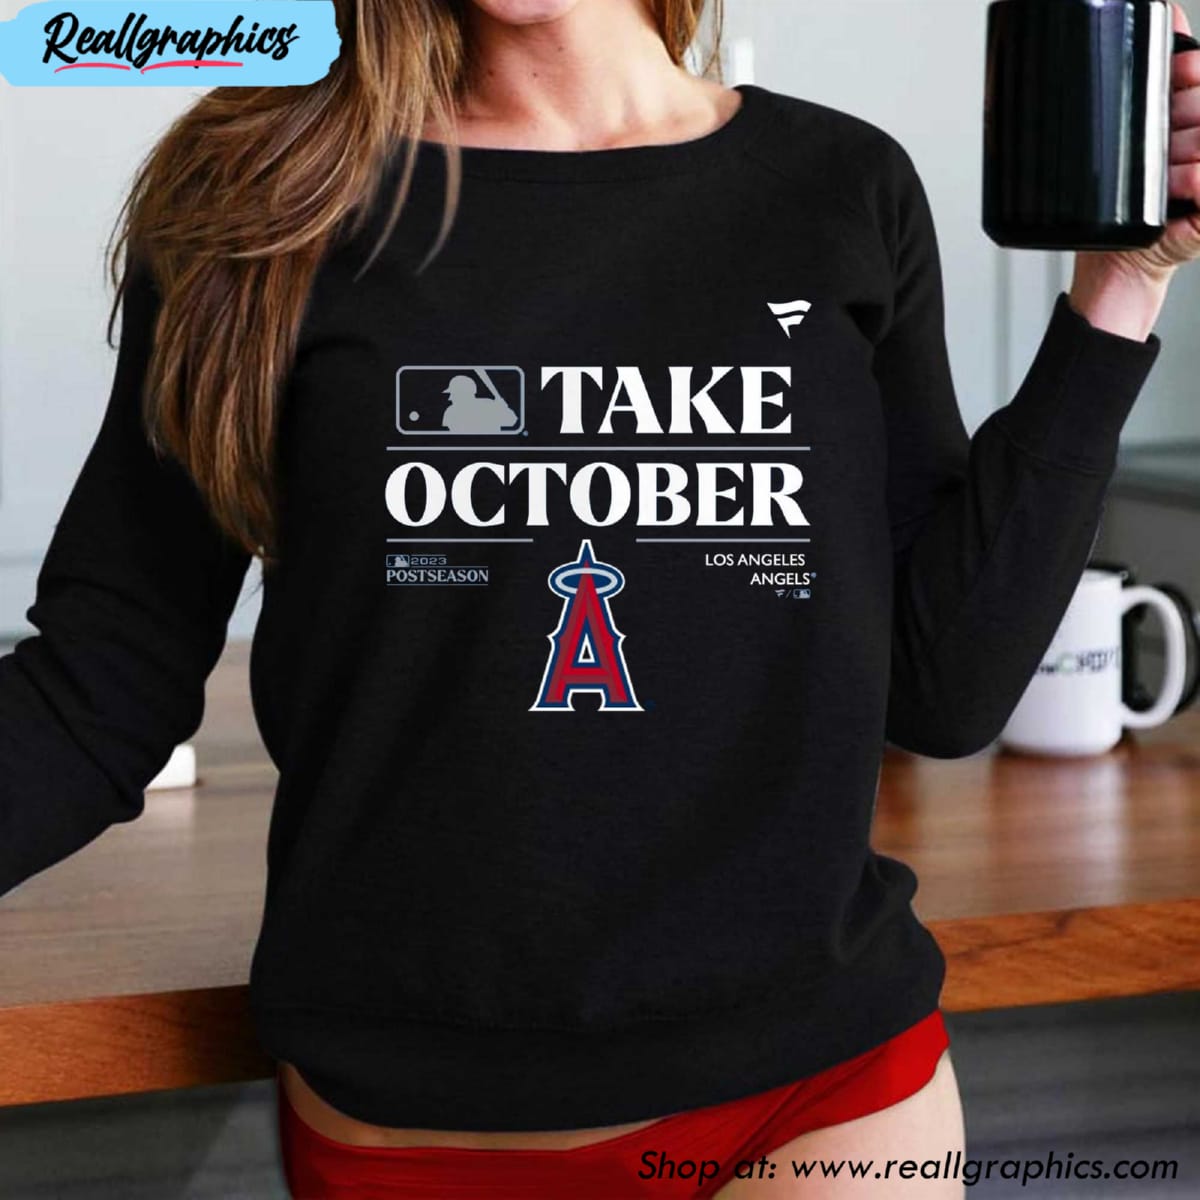 Los Angeles Angels Mlb Take October 2023 Postseason Shirt, hoodie